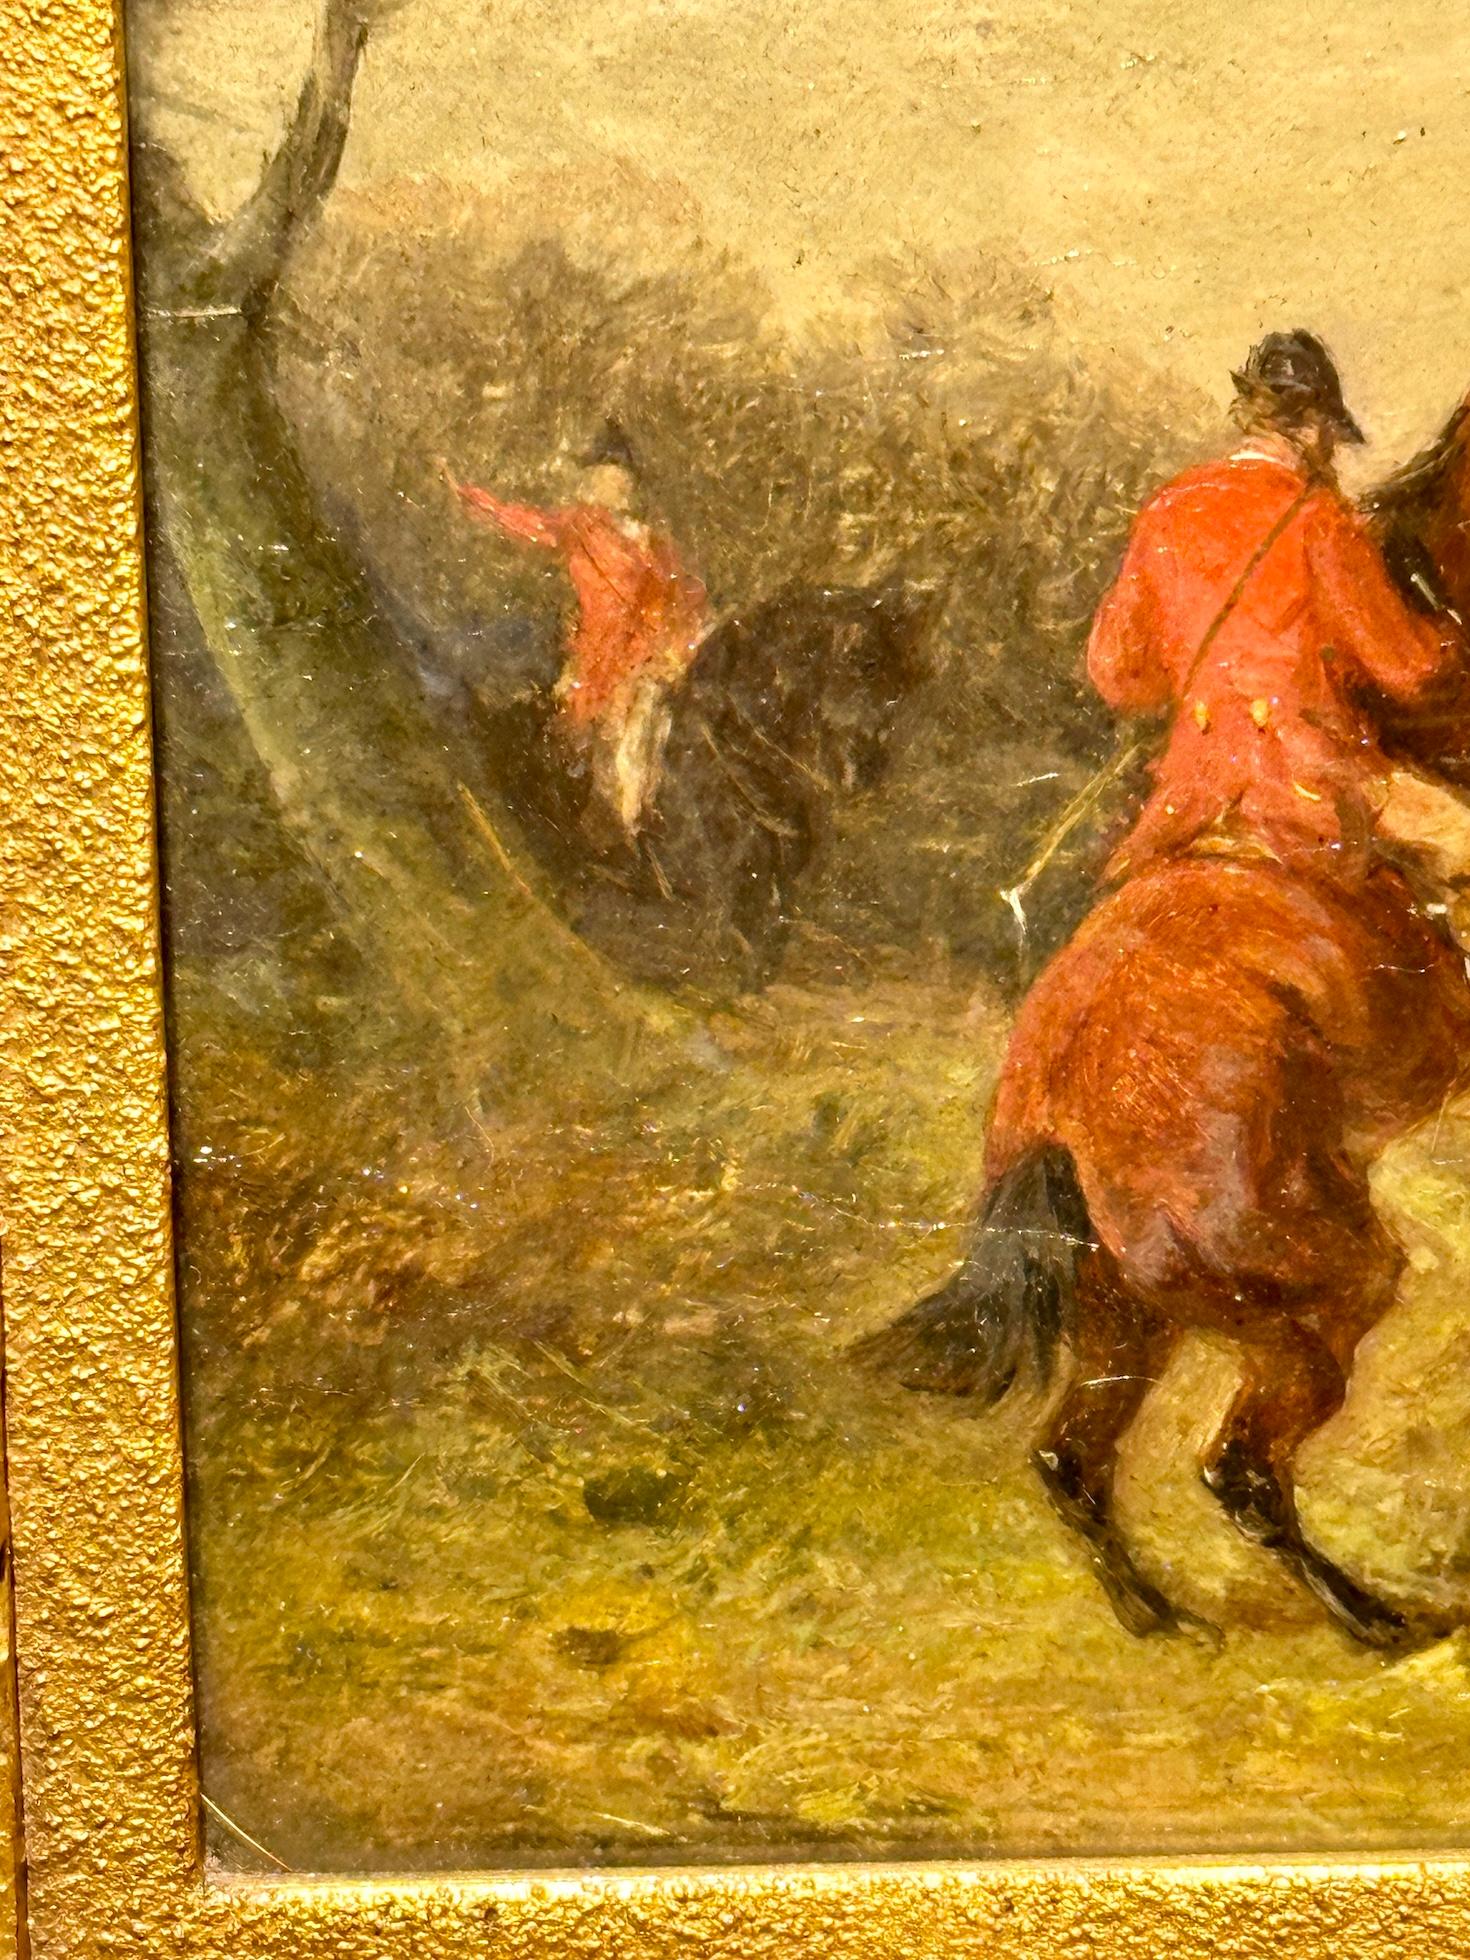 William Joseph Shayer

Peintre sportif anglais du 19e siècle. Il a peint principalement à petite échelle, avec beaucoup de détails et de qualité. 

Fils de William Shayer senior, il a dû bien apprendre de son père puisqu'il a fait carrière dans la